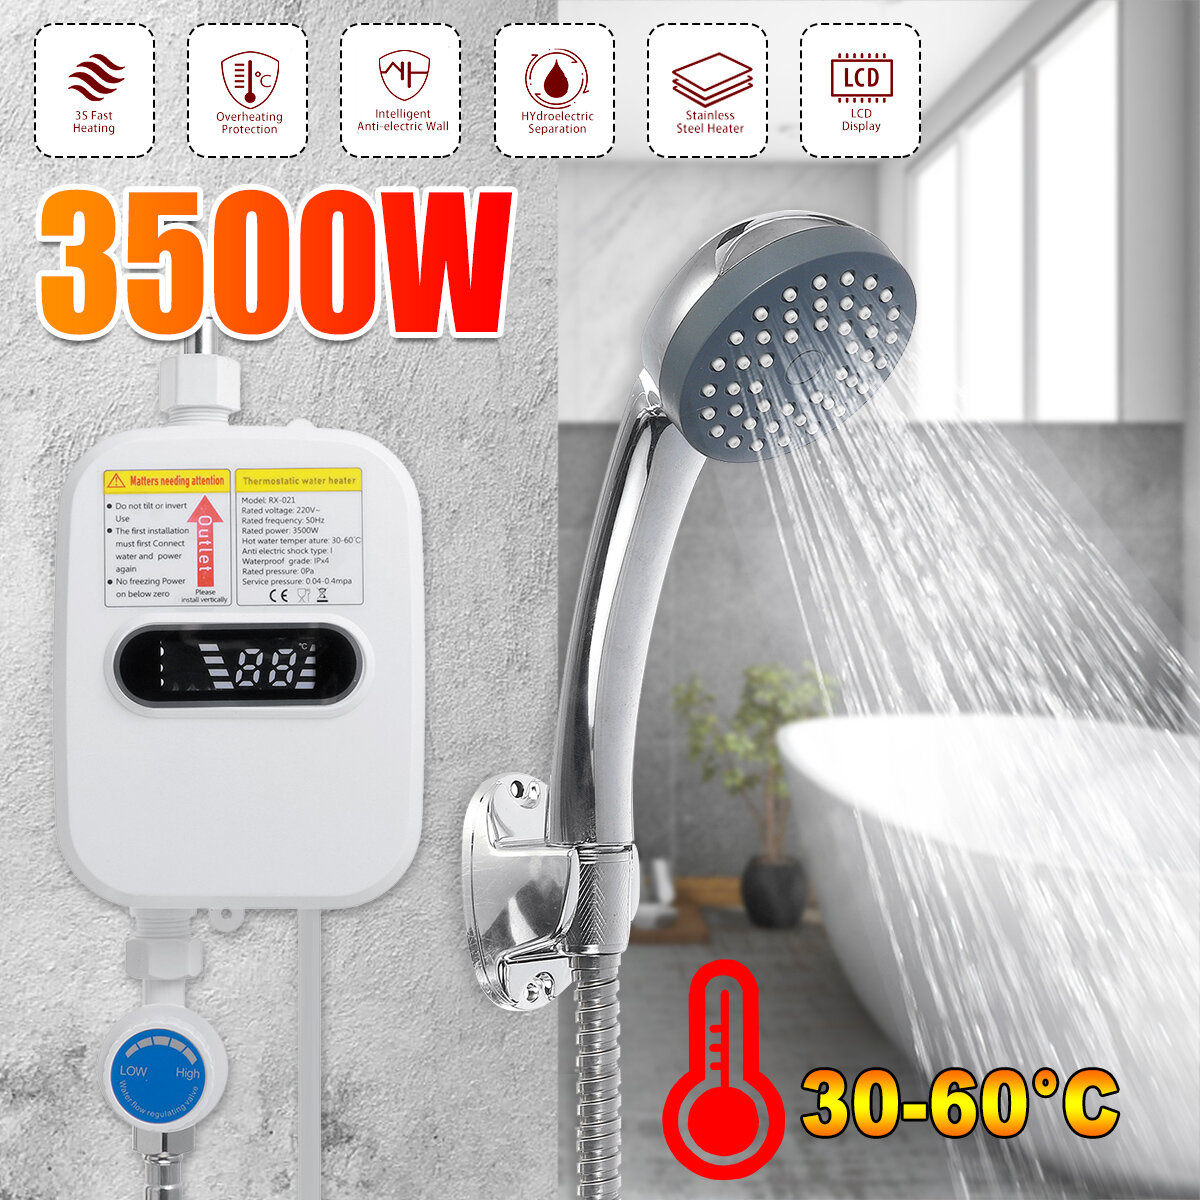 Στα 35.80 € από αποθήκη Κίνας | 3500W 220V Mini Water Heater Hot Electric Tankless Household Bathroom Faucet with Shower Head LCD Temperature Display